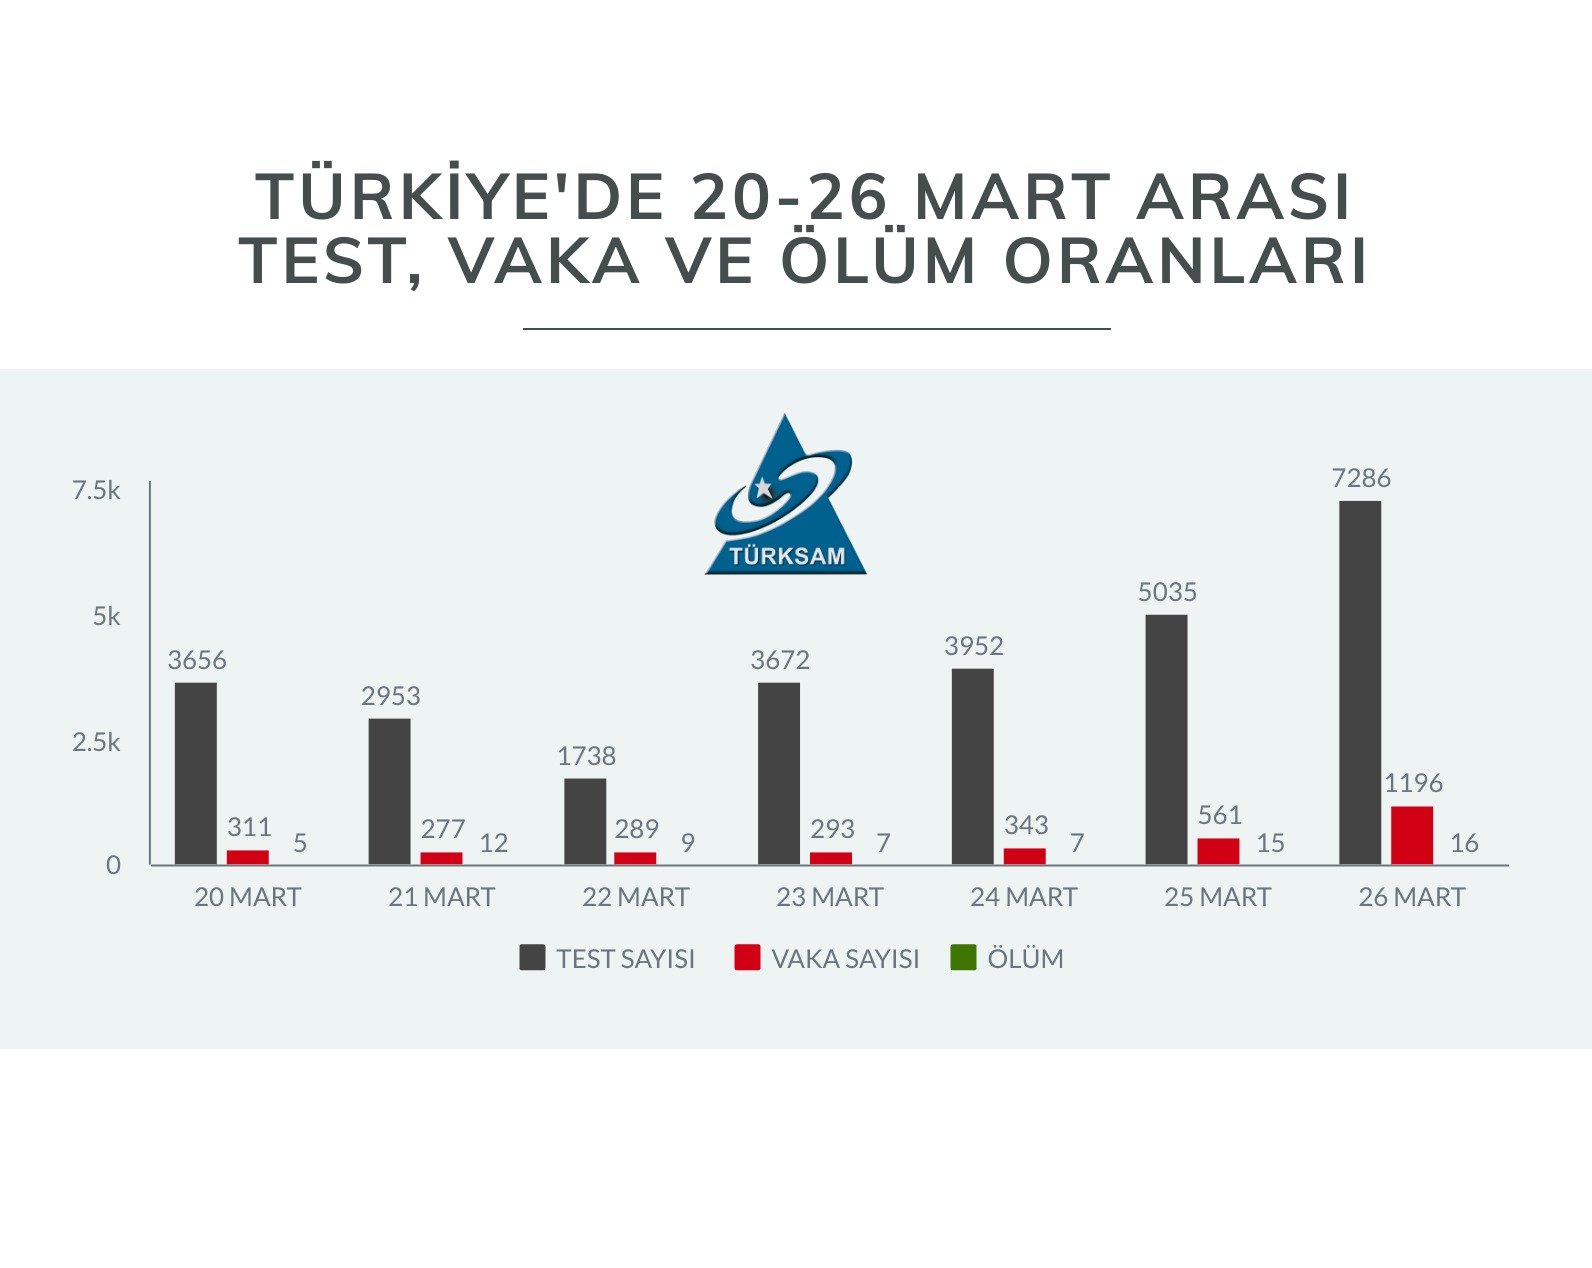 Türkiye'de 20-26 Mart Tarihleri Arası Koronavirüs Test/Vaka Oranı